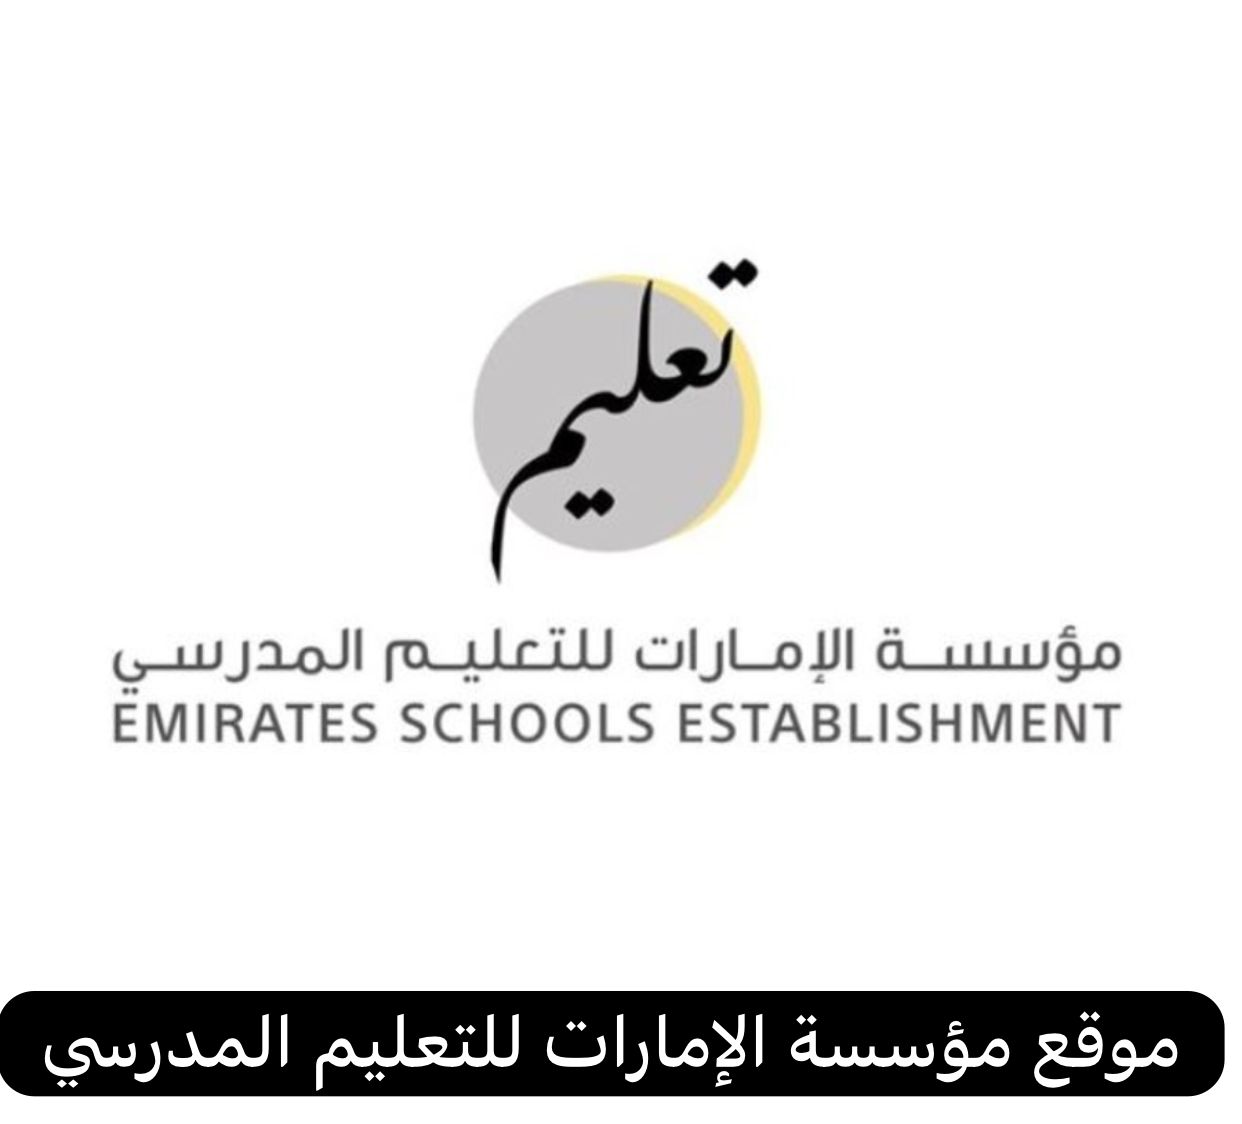 موقع مؤسسة الإمارات للتعليم المدرسي